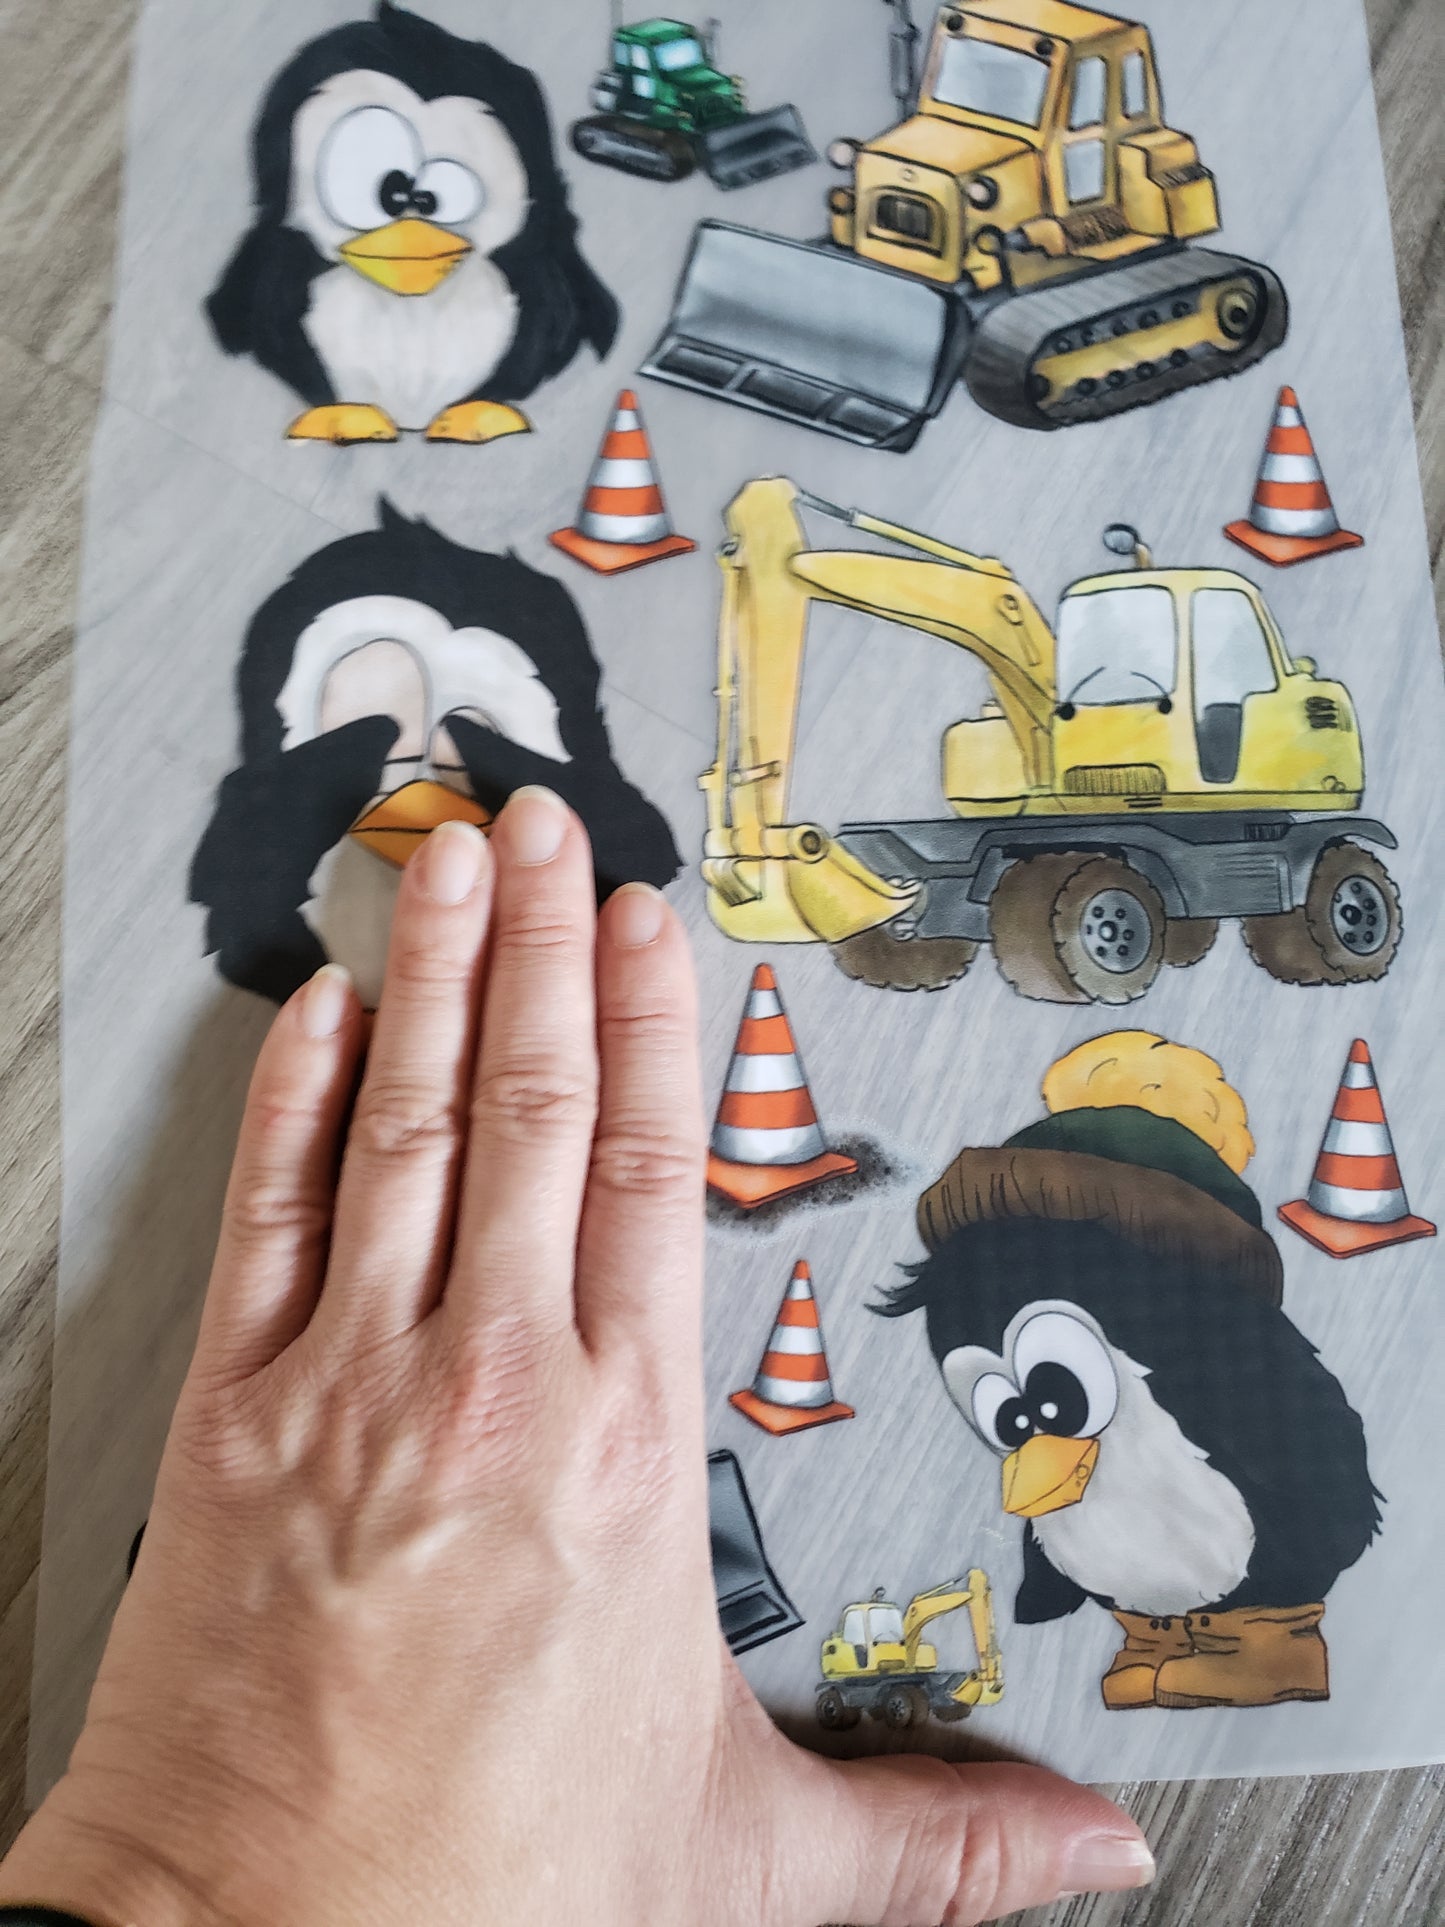 A4 Bügelbild Piper der Pinguin auf der Baustelle , mit Liebe illustriert